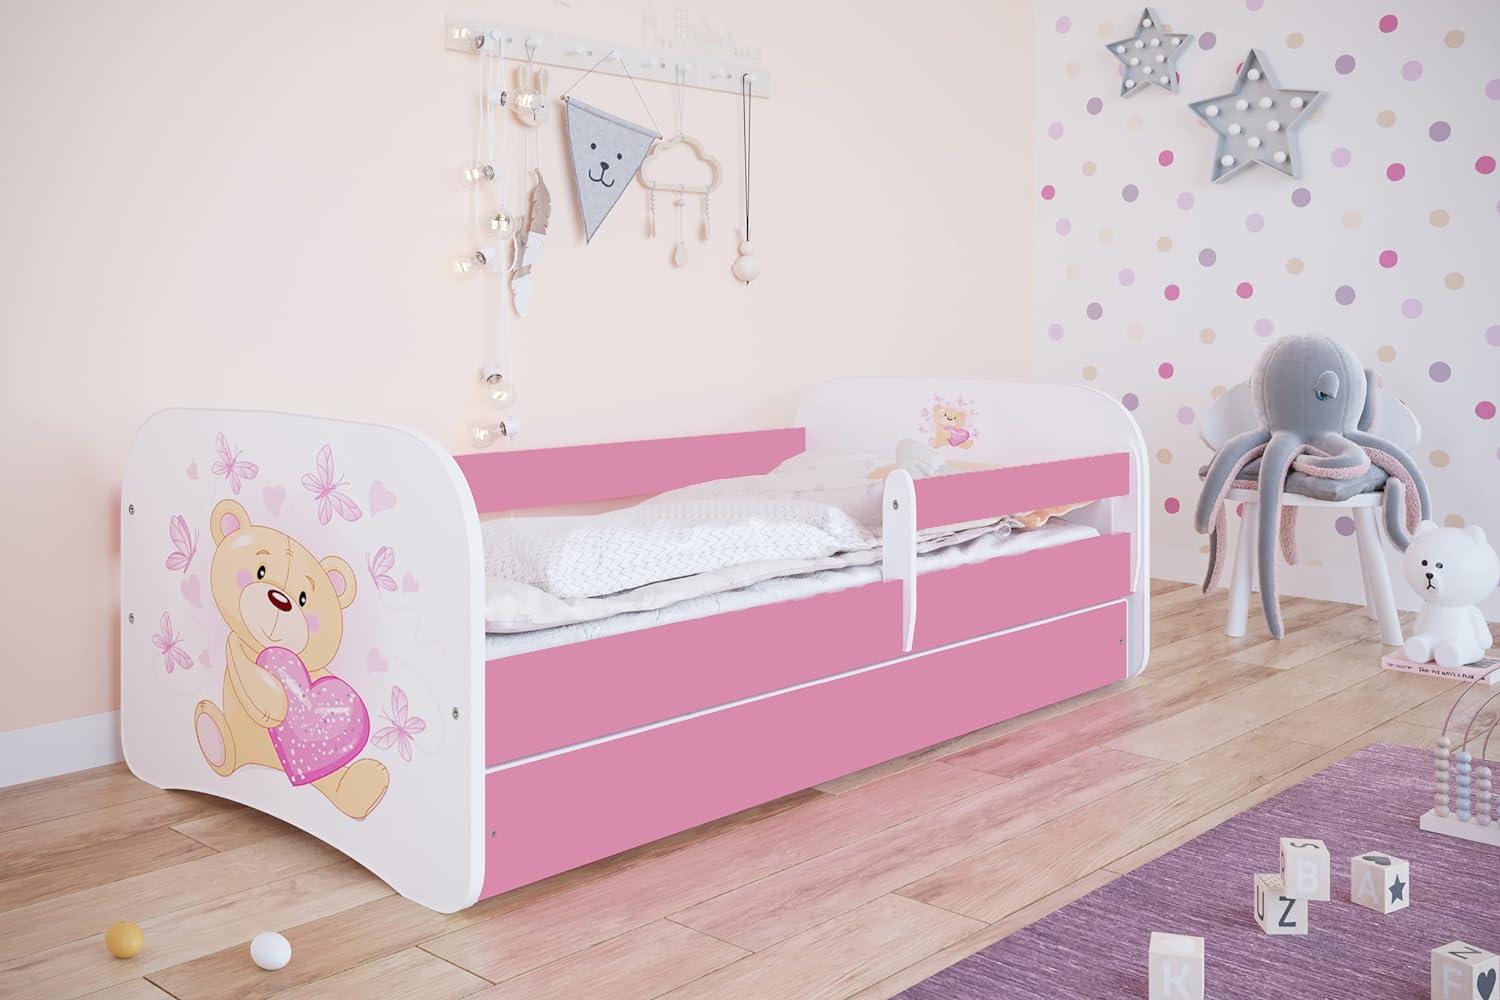 Kocot Kids 'Teddybär mit Schmetterlingen' Kinderbett 70 x 140 cm Rosa, mit Rausfallschutz, Matratze, Schublade und Lattenrost Bild 1